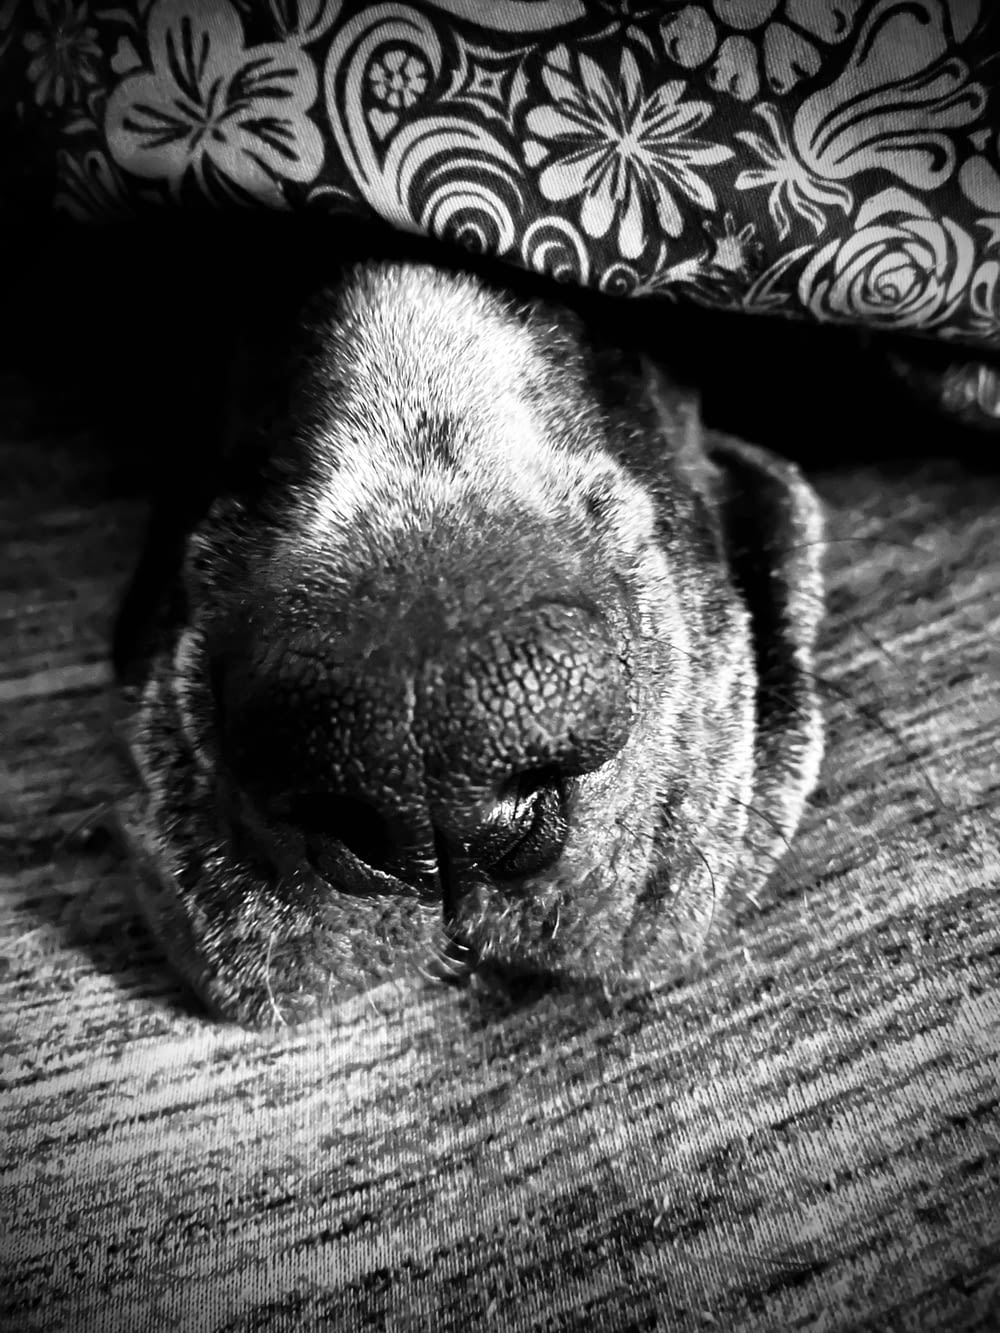 Una foto en blanco y negro de un perro